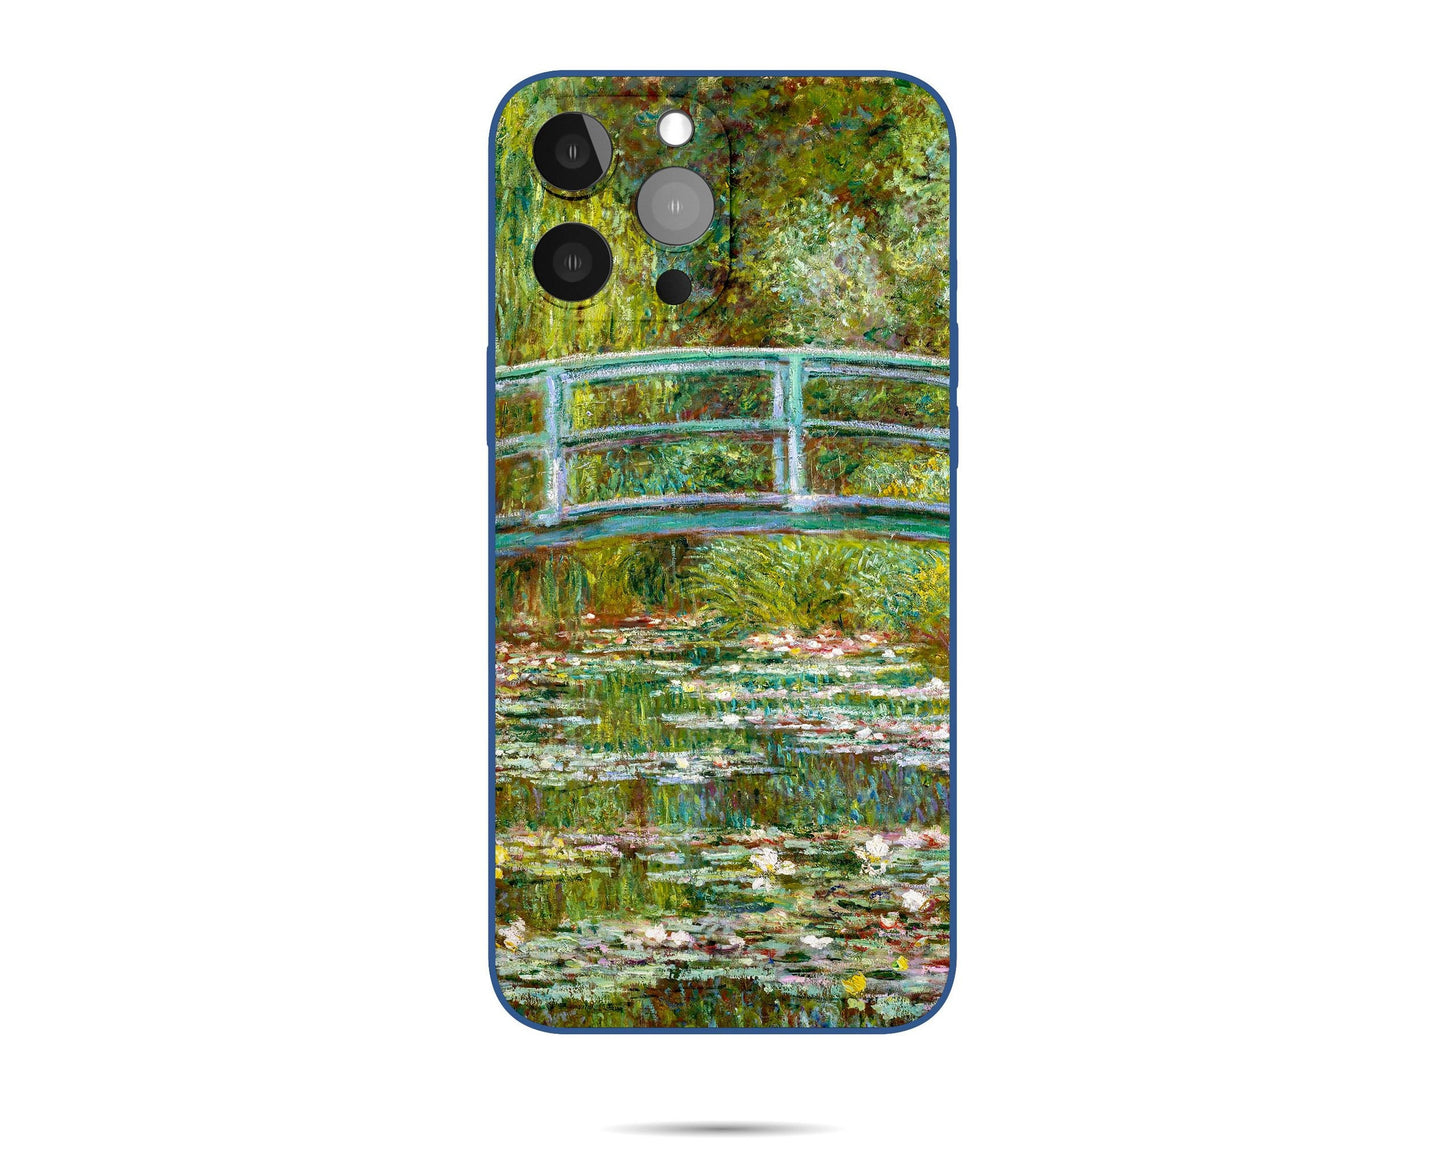 Claude Monet The Japanese Bridge Iphone Case, Iphone 11, Iphone Cases, Iphone 8 Plus Case Art, Vivid Colors, Designer Iphone 8 Plus Case